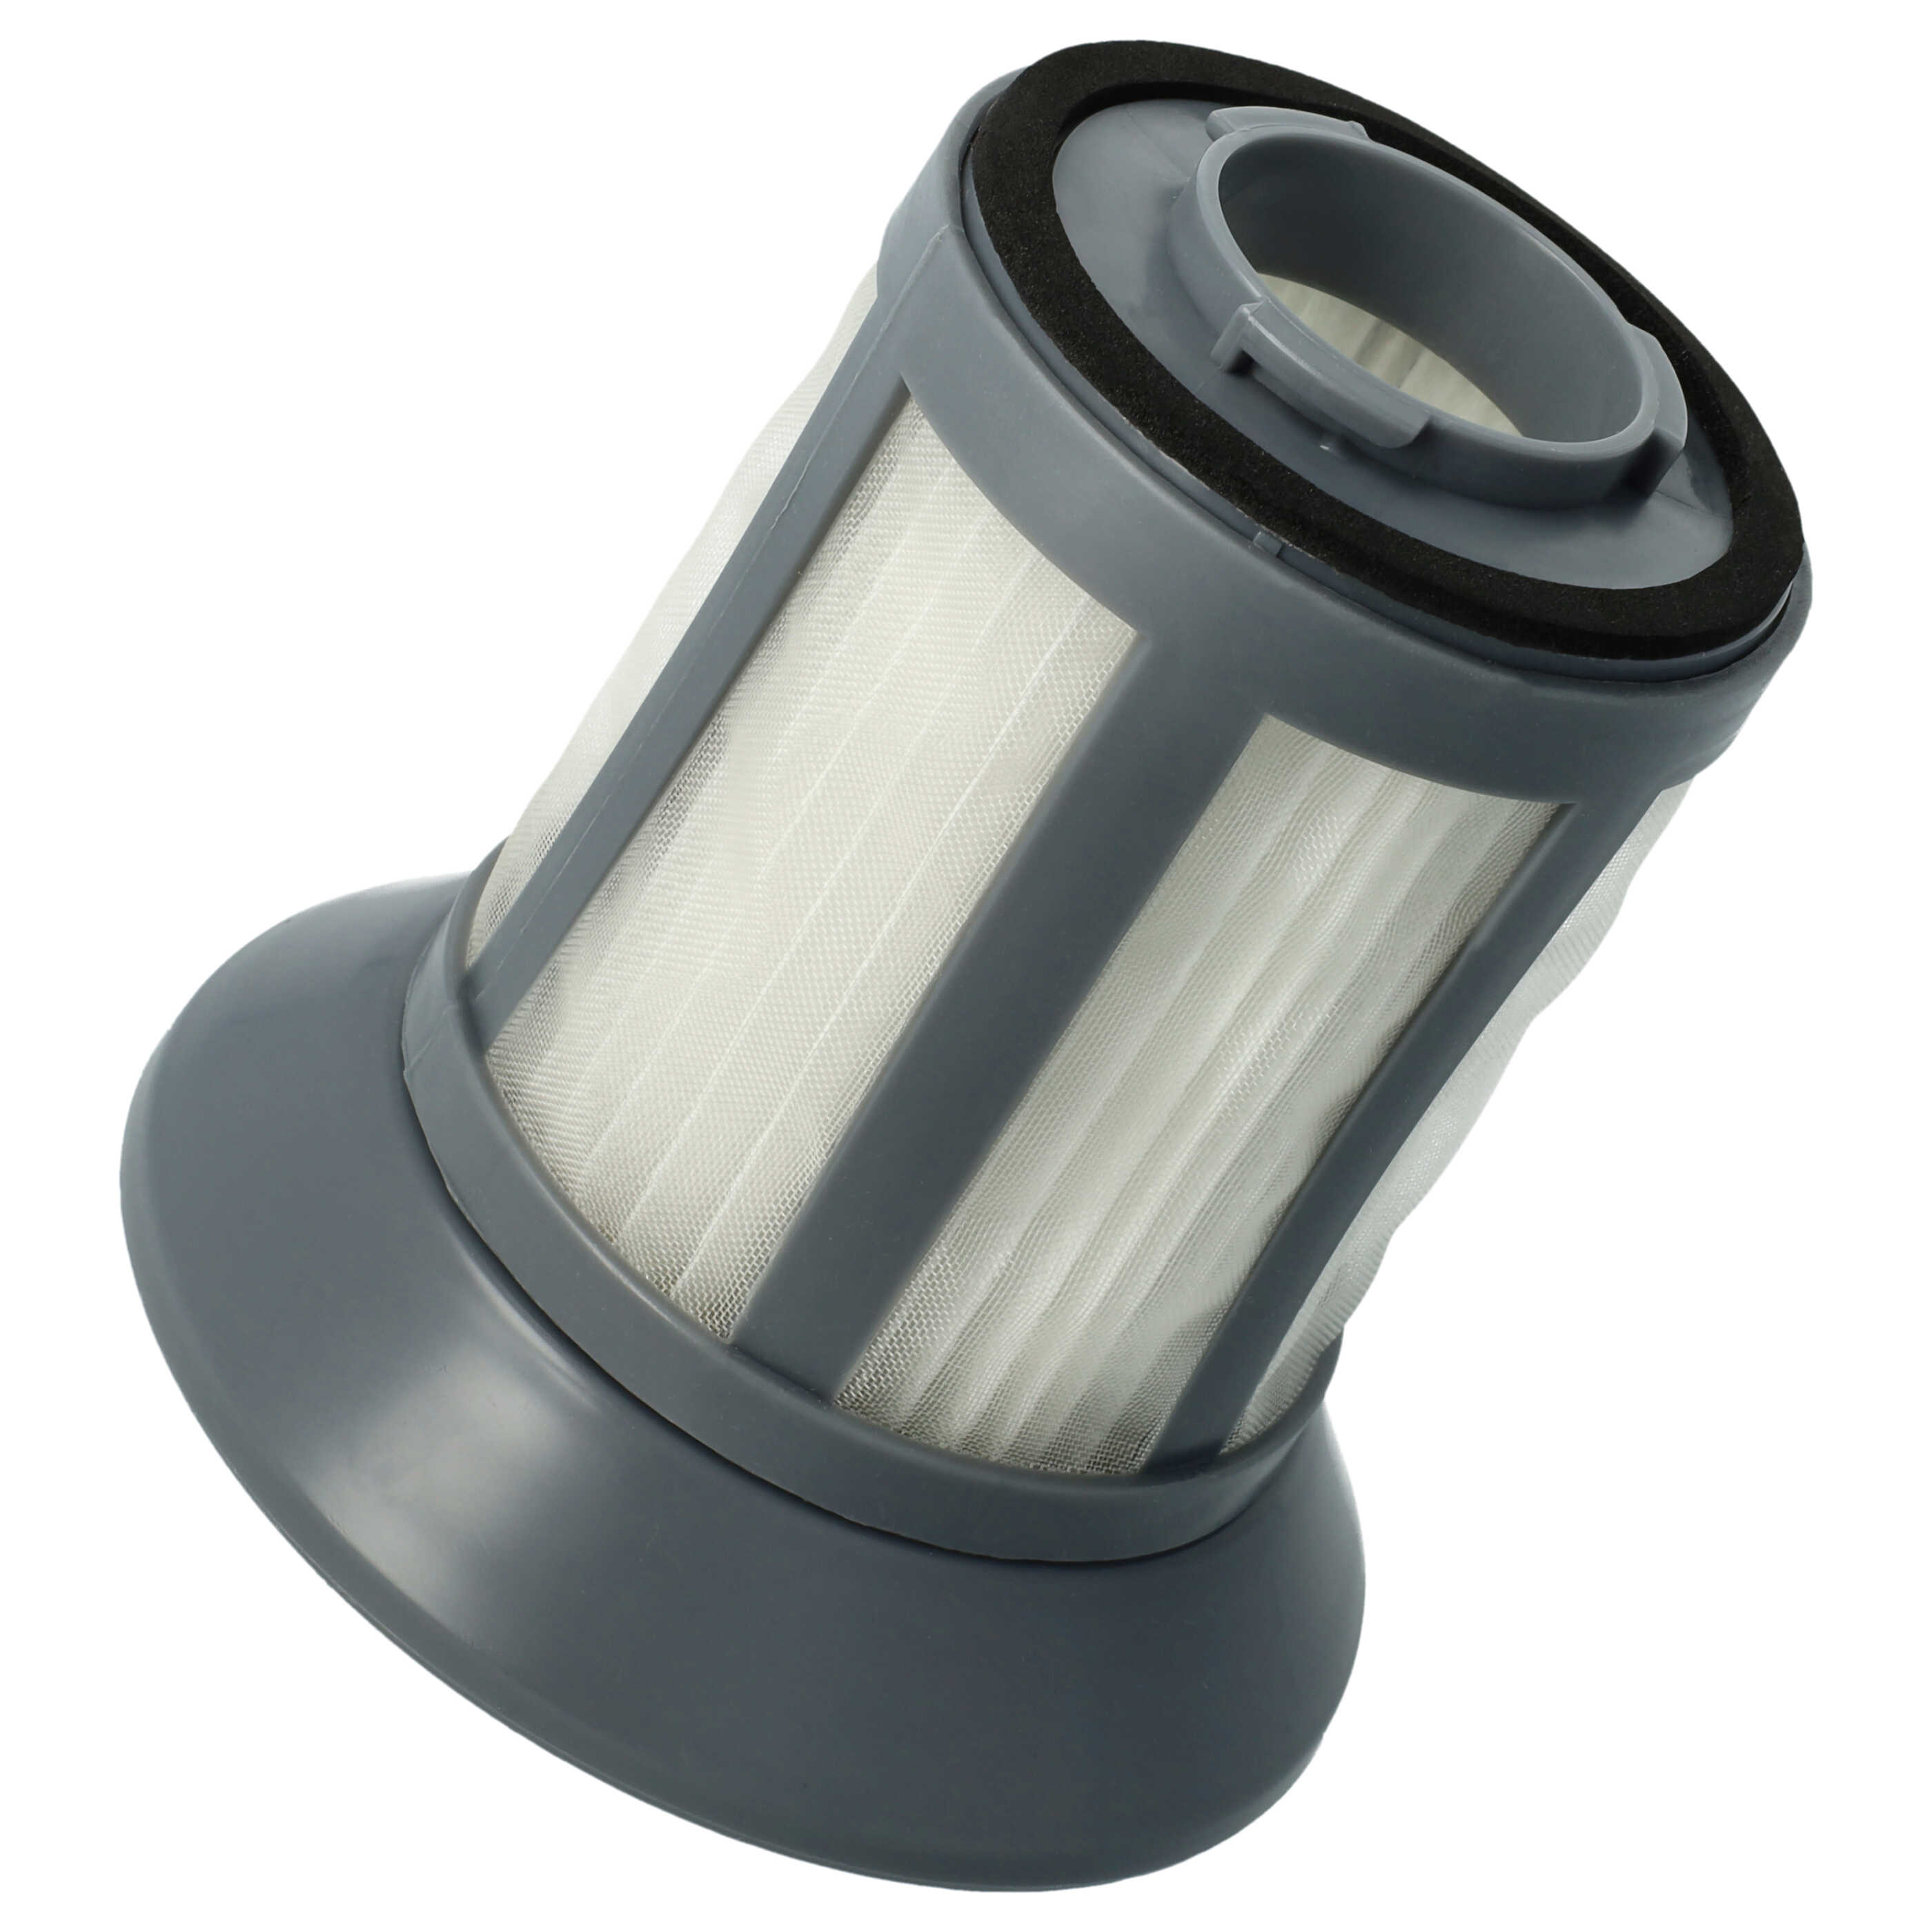 Filtro per aspirapolvere Bomann ecc. - elemento filtrante (filtro in nylon + HEPA), nero / bianco / grigio